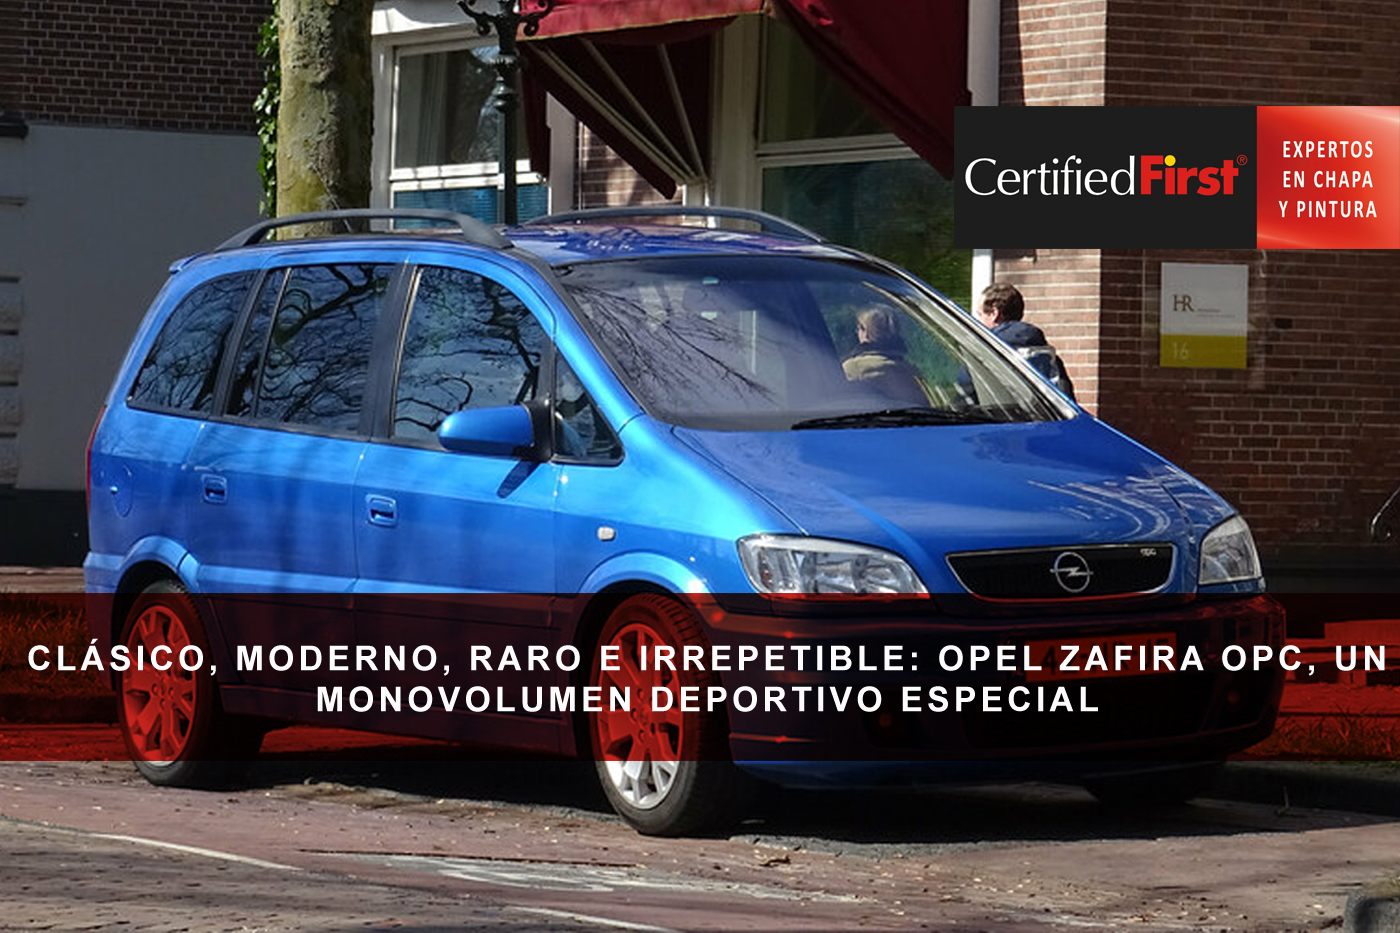 Clásico, moderno, raro e irrepetible: Opel Zafira OPC, un monovolumen deportivo especial